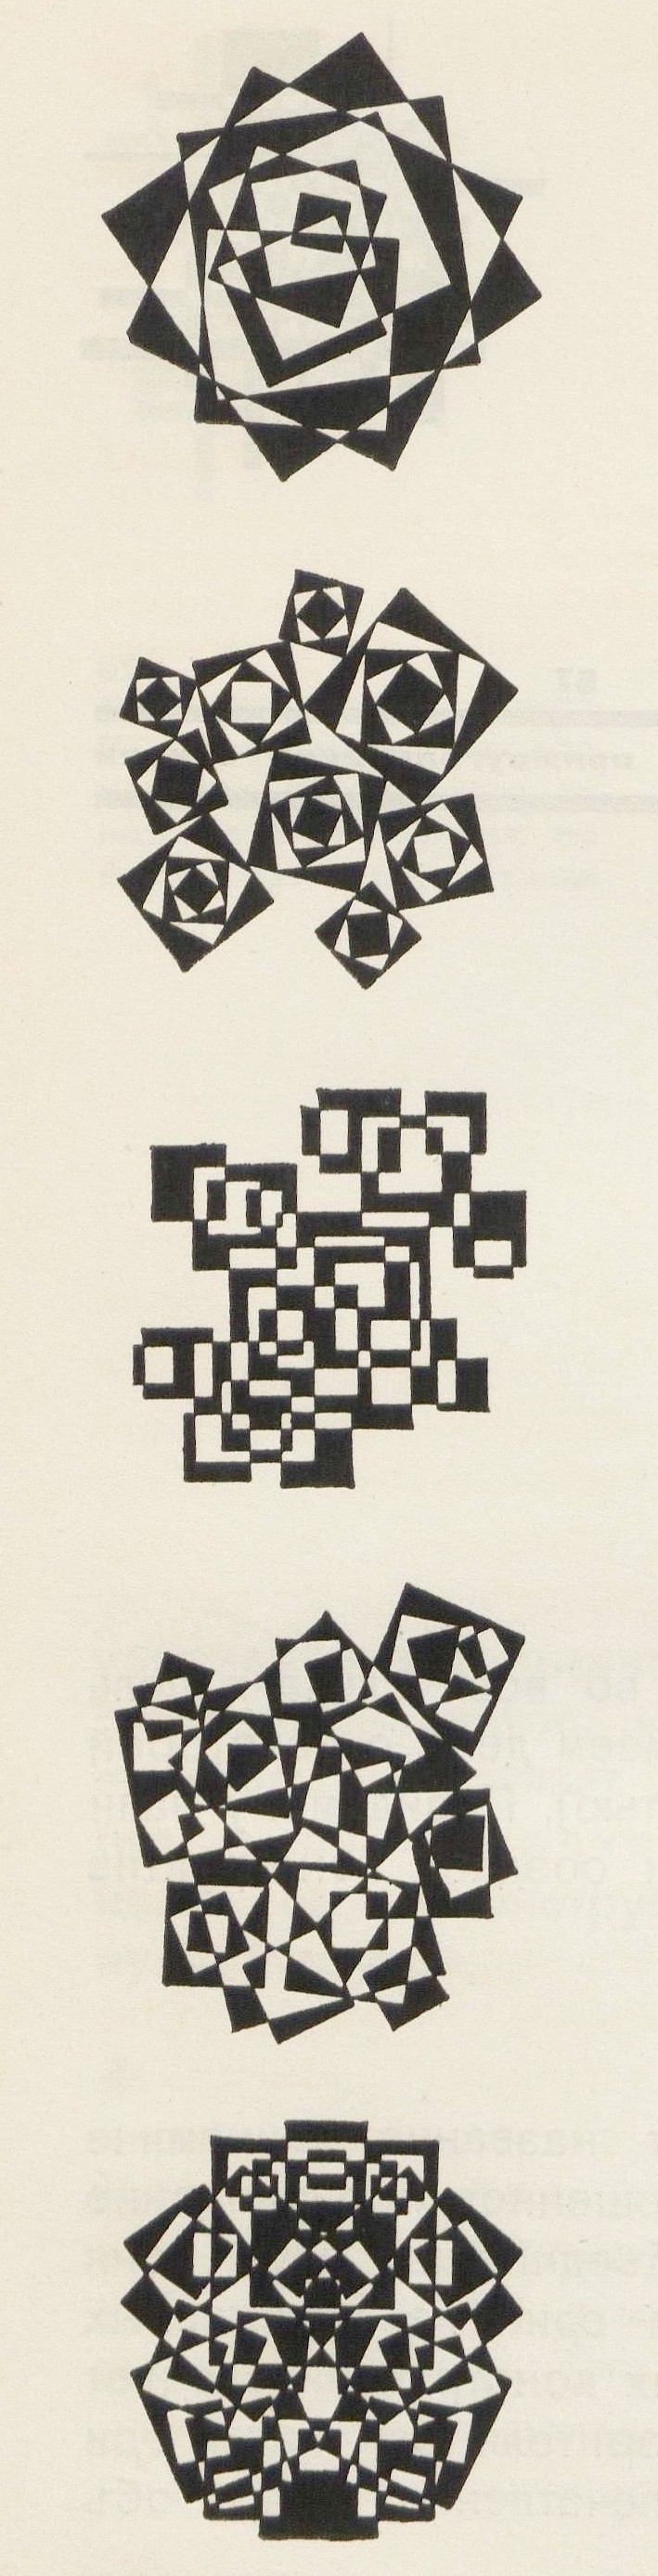 68, 69, 70, 71, 72 Различные композиции из одних квадратов в отображении их двойным цветом